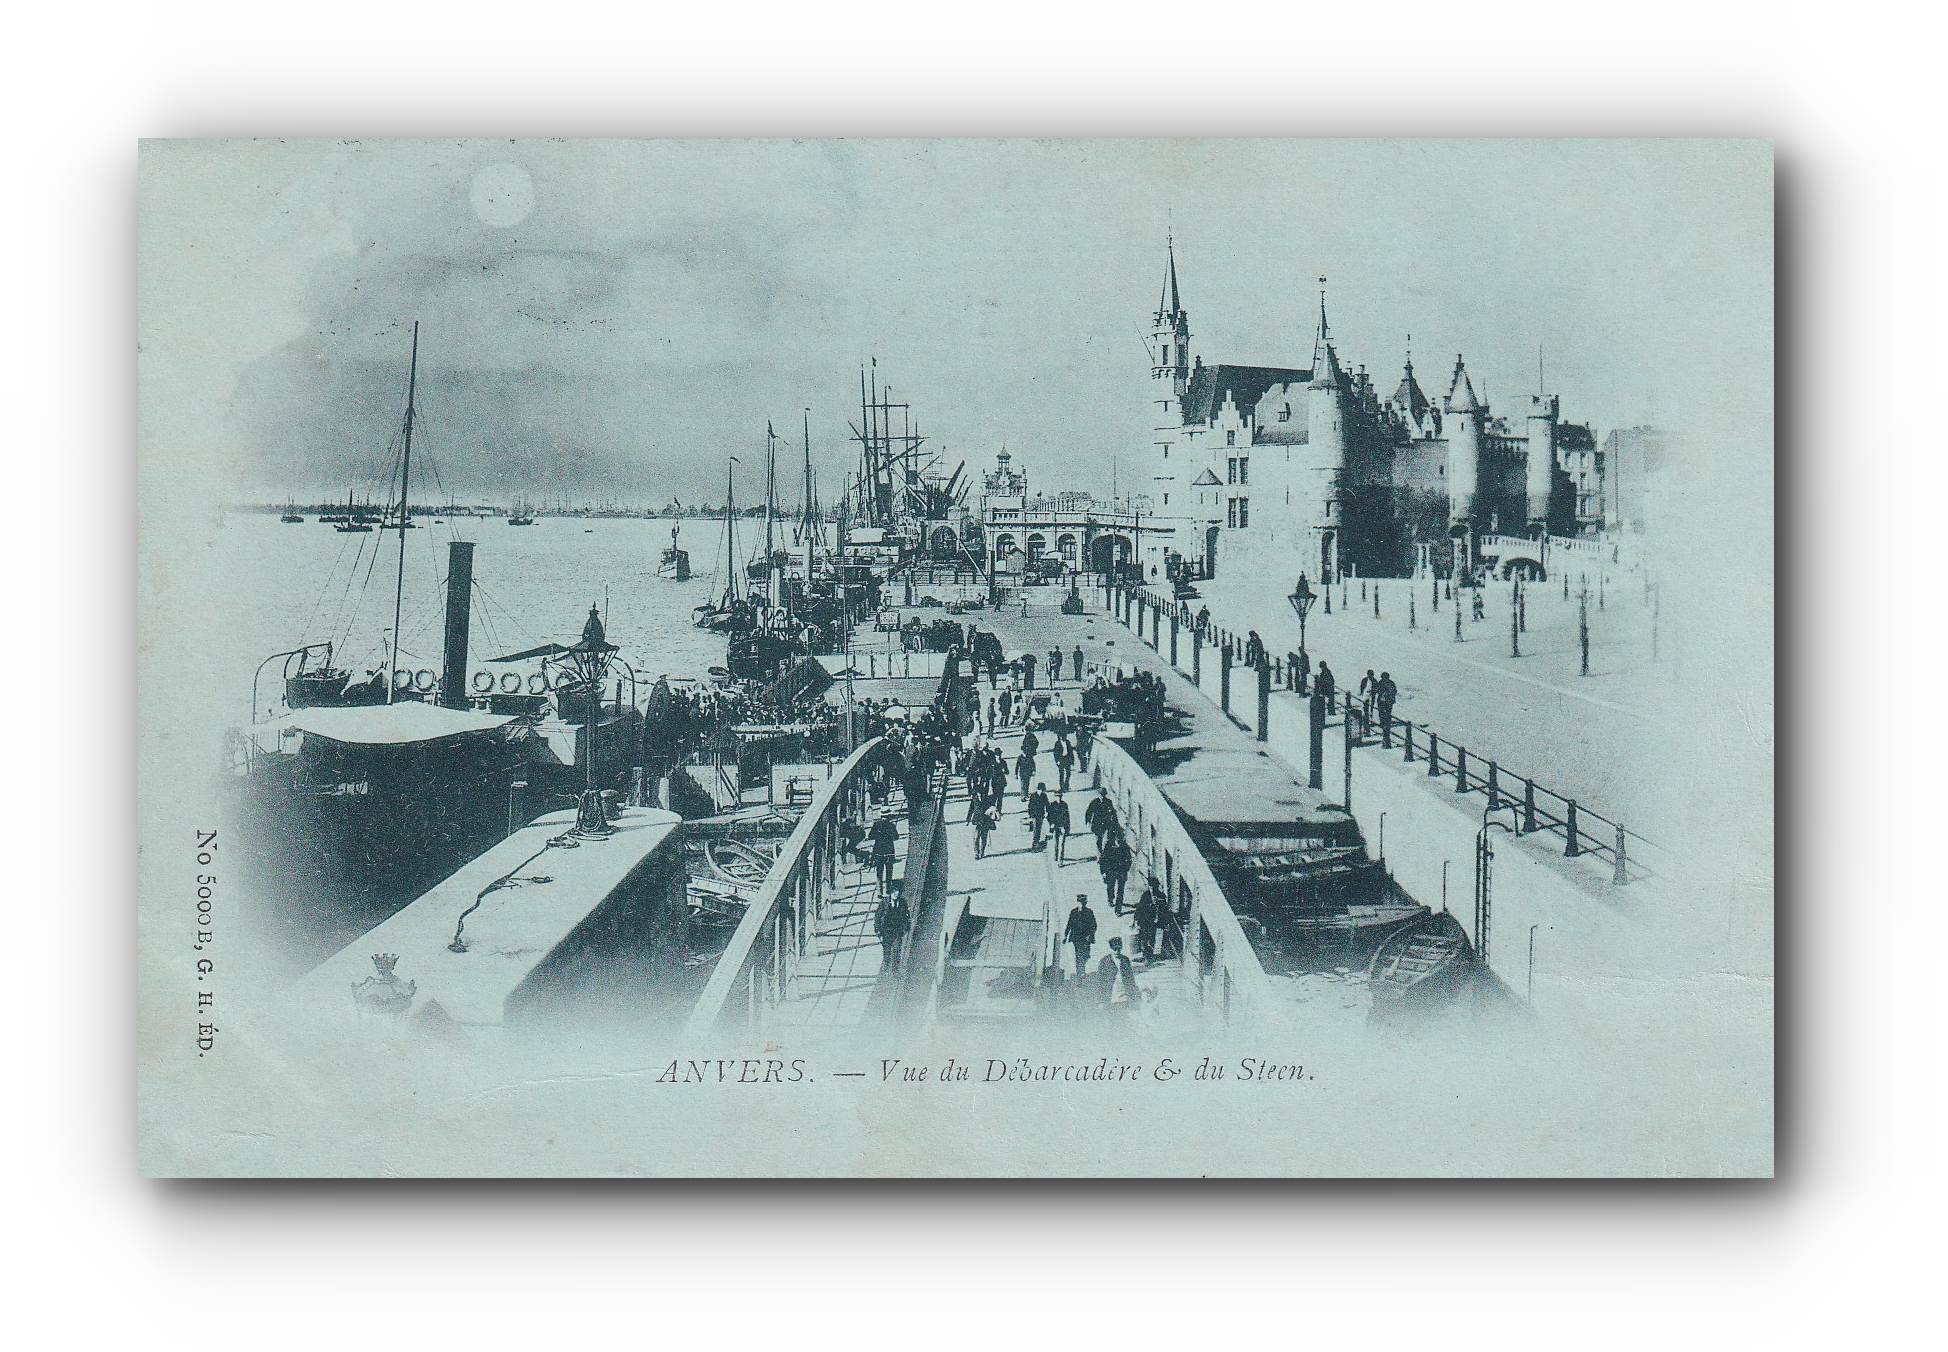 - ANVERS  - Vue du Débarcadère  du Steen - 01.06.1899 -